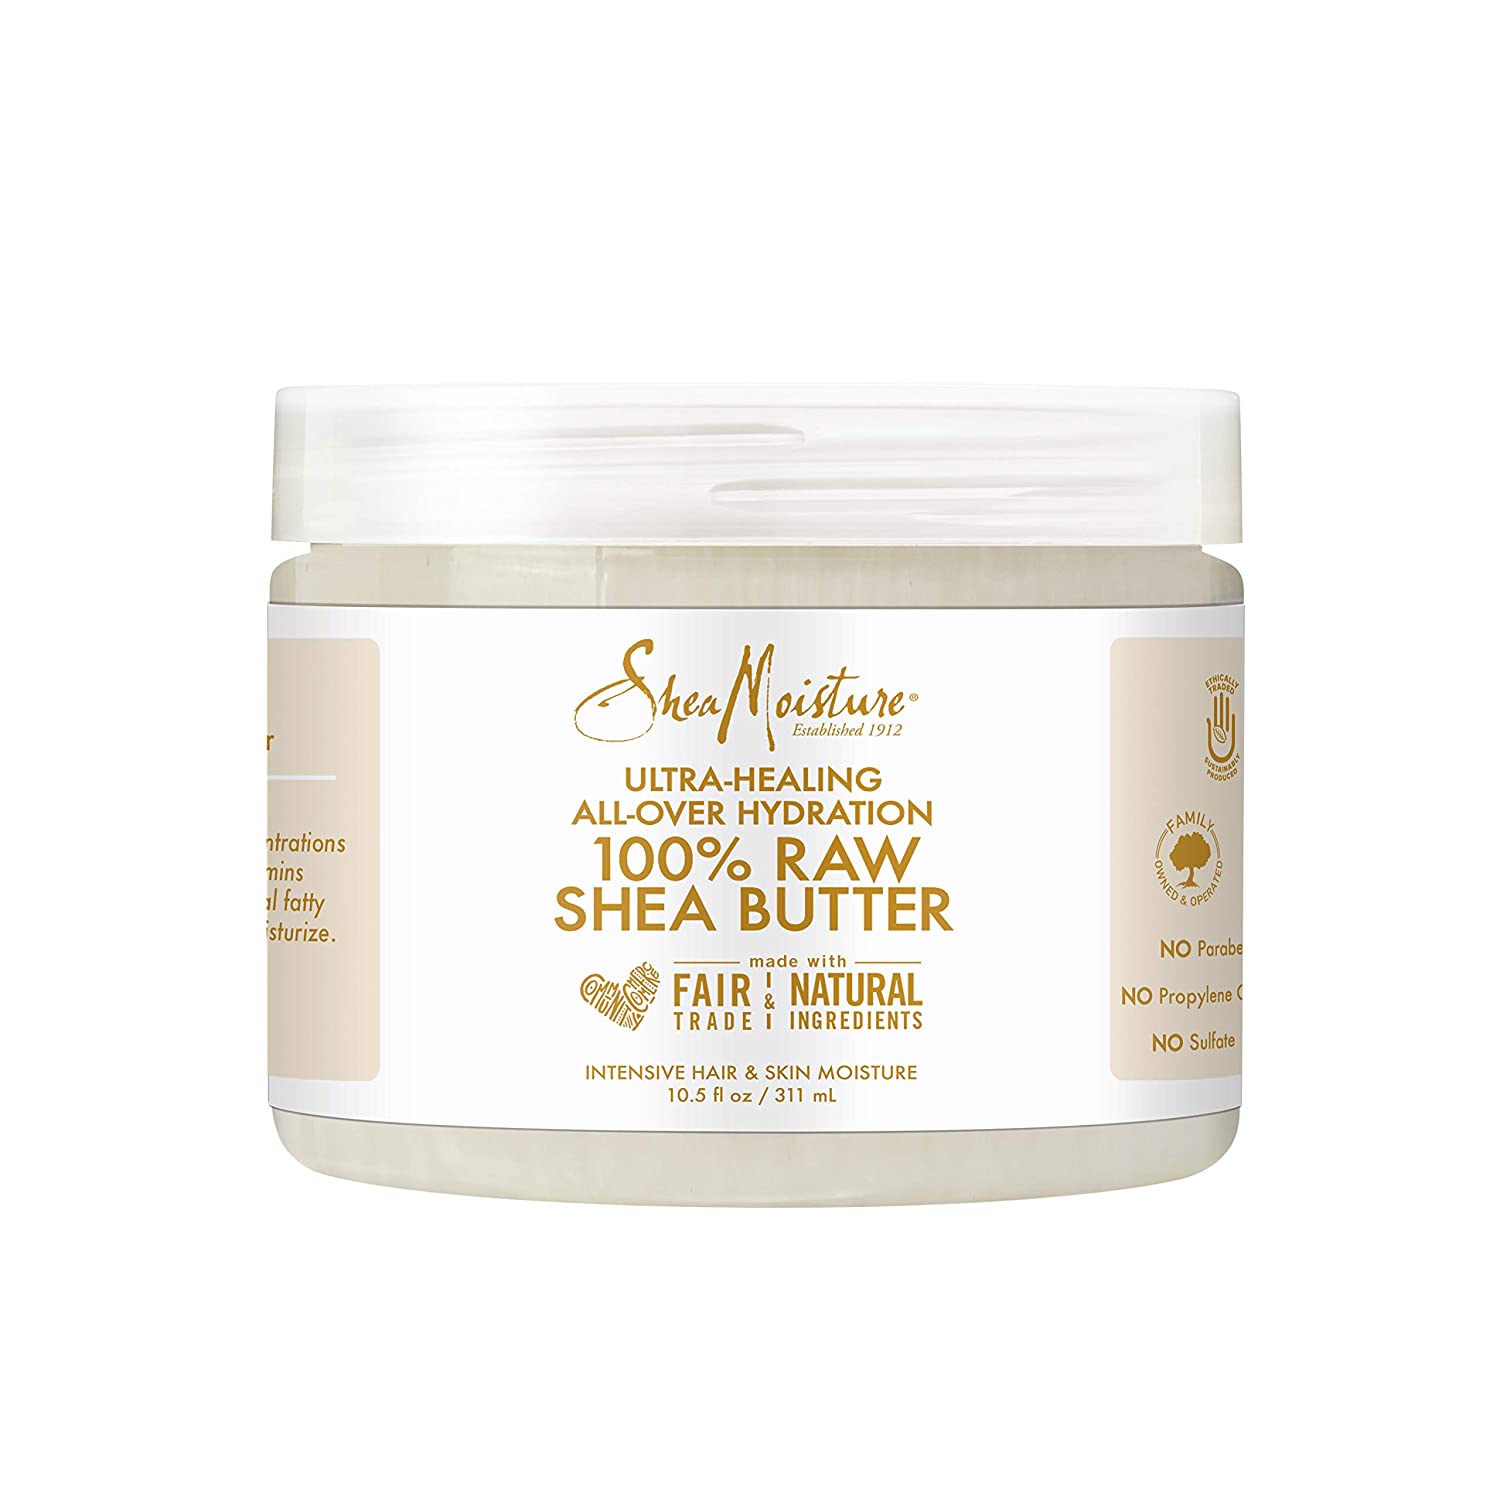 Sheamoisture for Ultra-Healing for Dry Skin 100% Raw Shea Butter